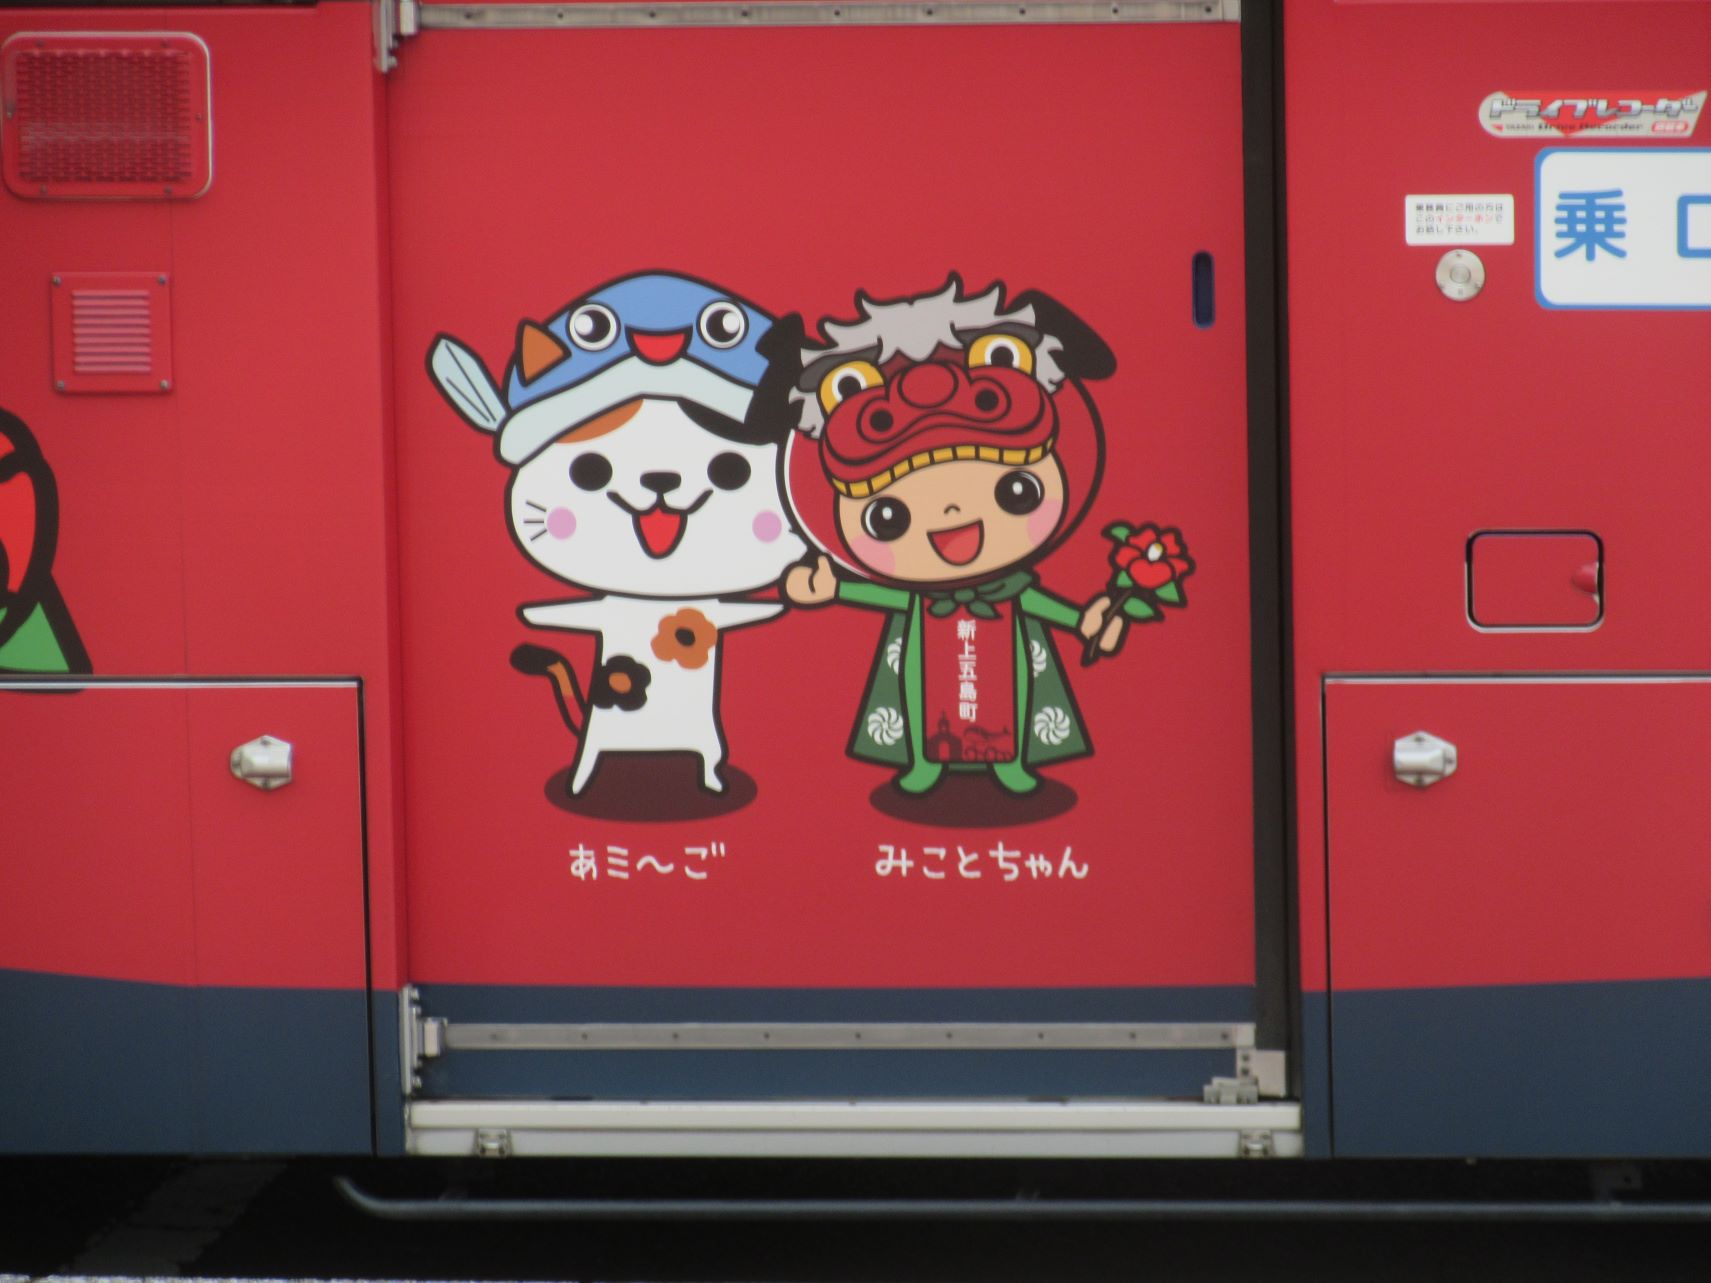 長崎県南松浦郡新上五島町の有川港ターミナルで見かけたバスにいた、新上五島町公式キャラクターの『あミ～ご』と『みことちゃん』。